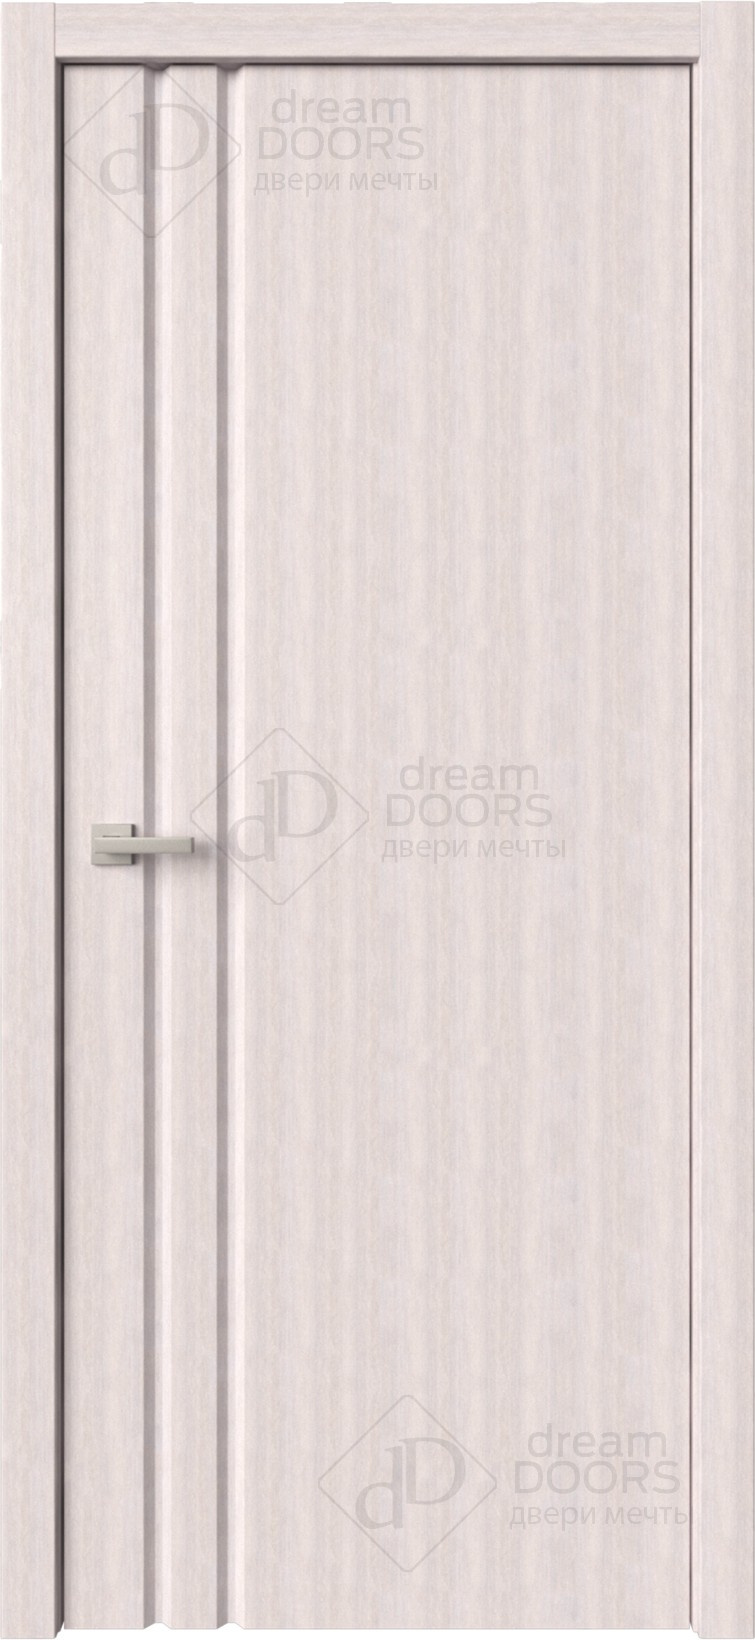 Dream Doors Межкомнатная дверь Стиль 1 узкое ПГ, арт. 6269 - фото №7